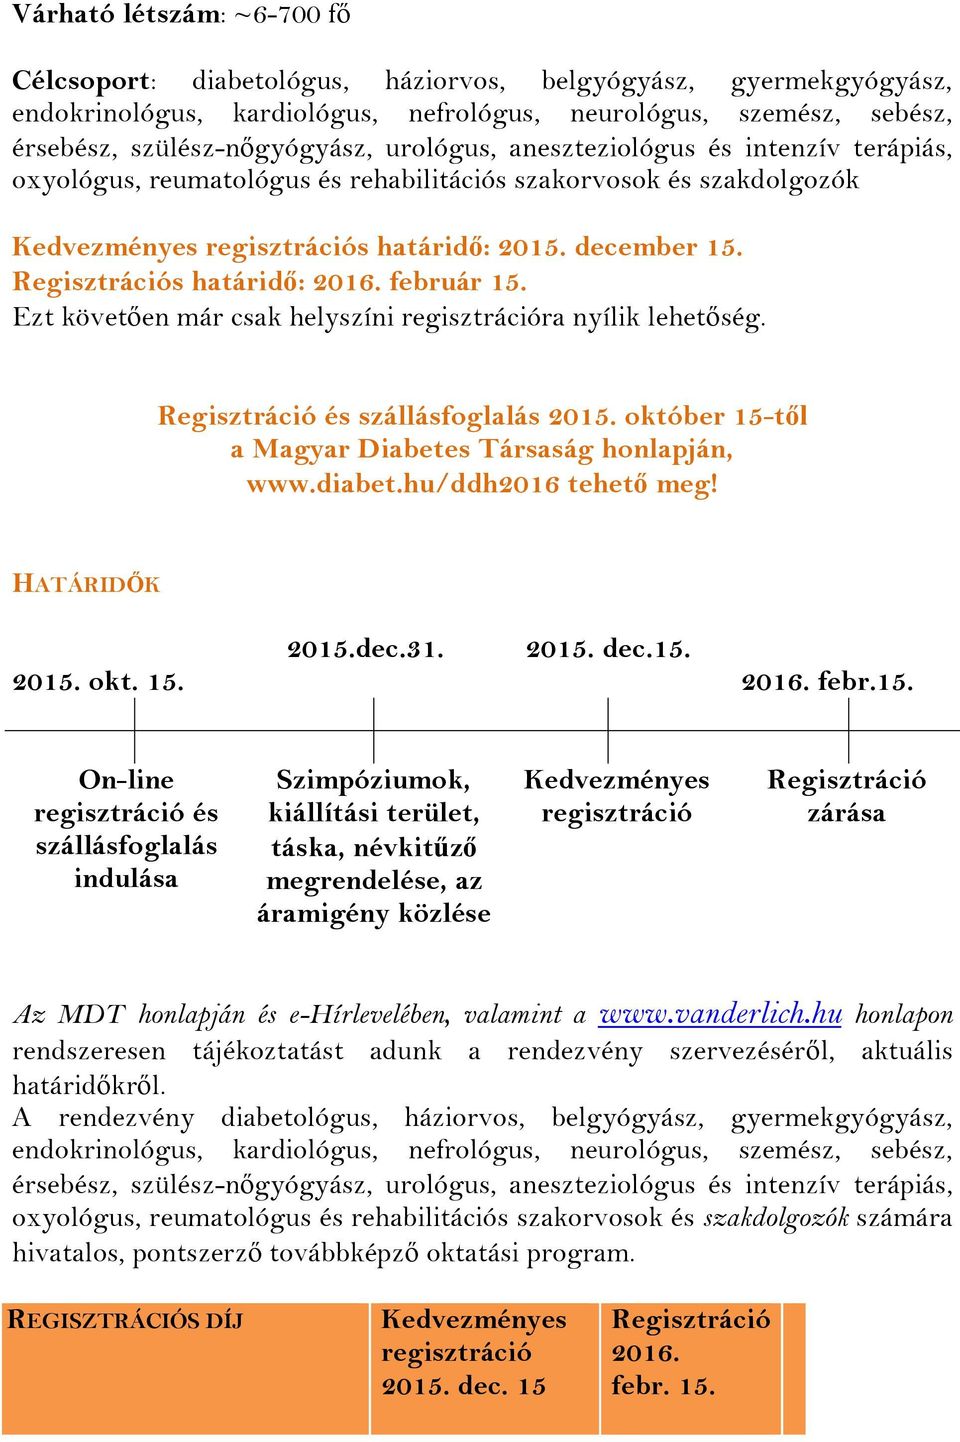 Regisztrációs határidő: 2016. február 15. Ezt követően már csak helyszíni regisztrációra nyílik lehetőség. Regisztráció és szállásfoglalás 2015.